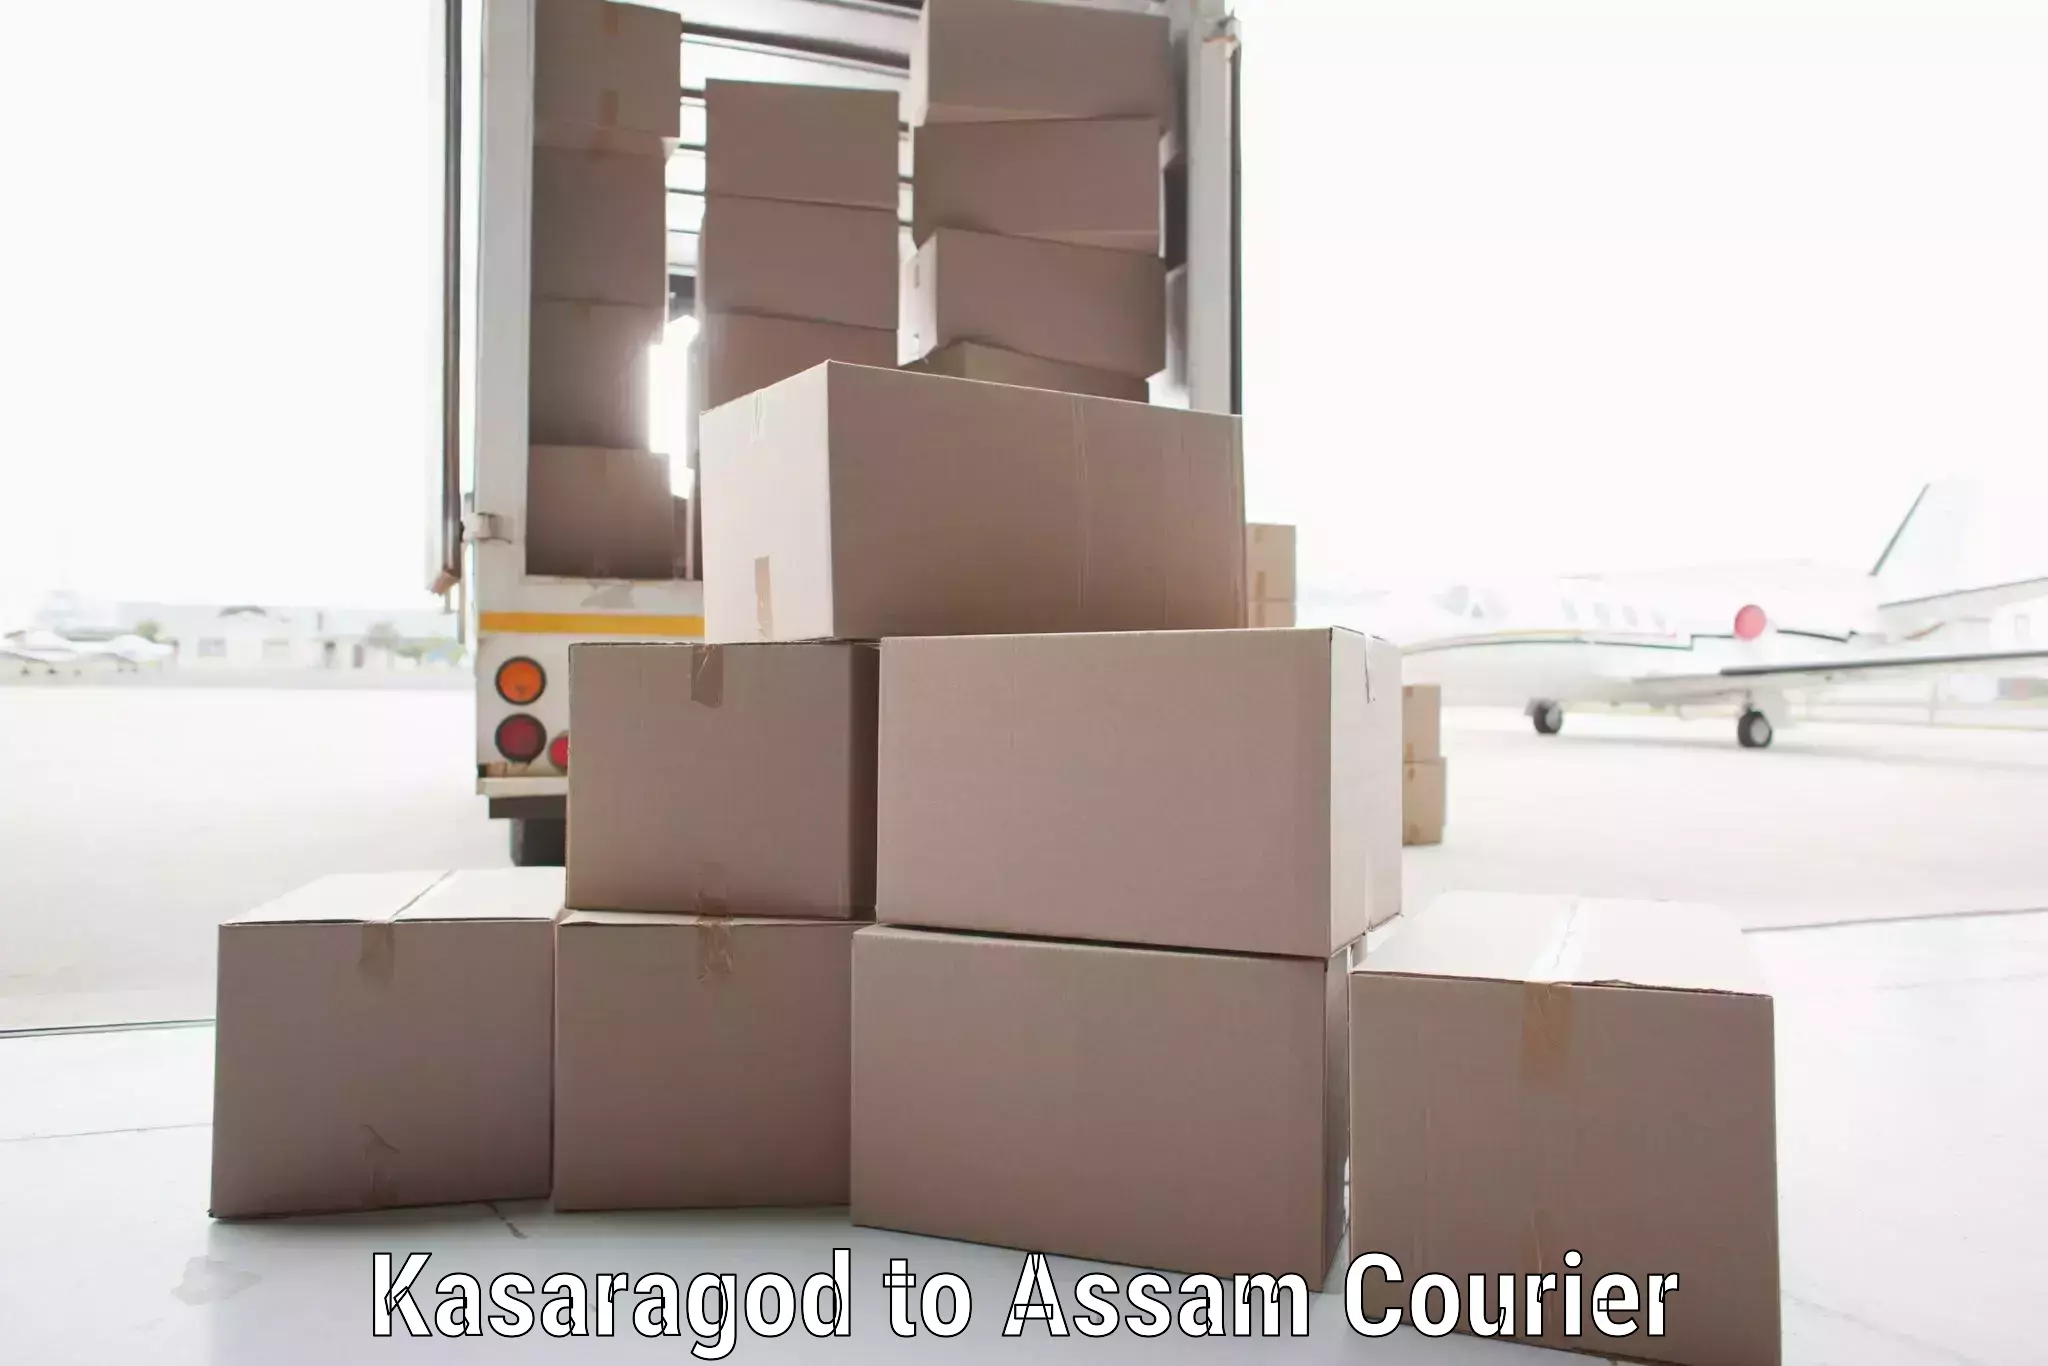 International parcel service Kasaragod to Dhubri